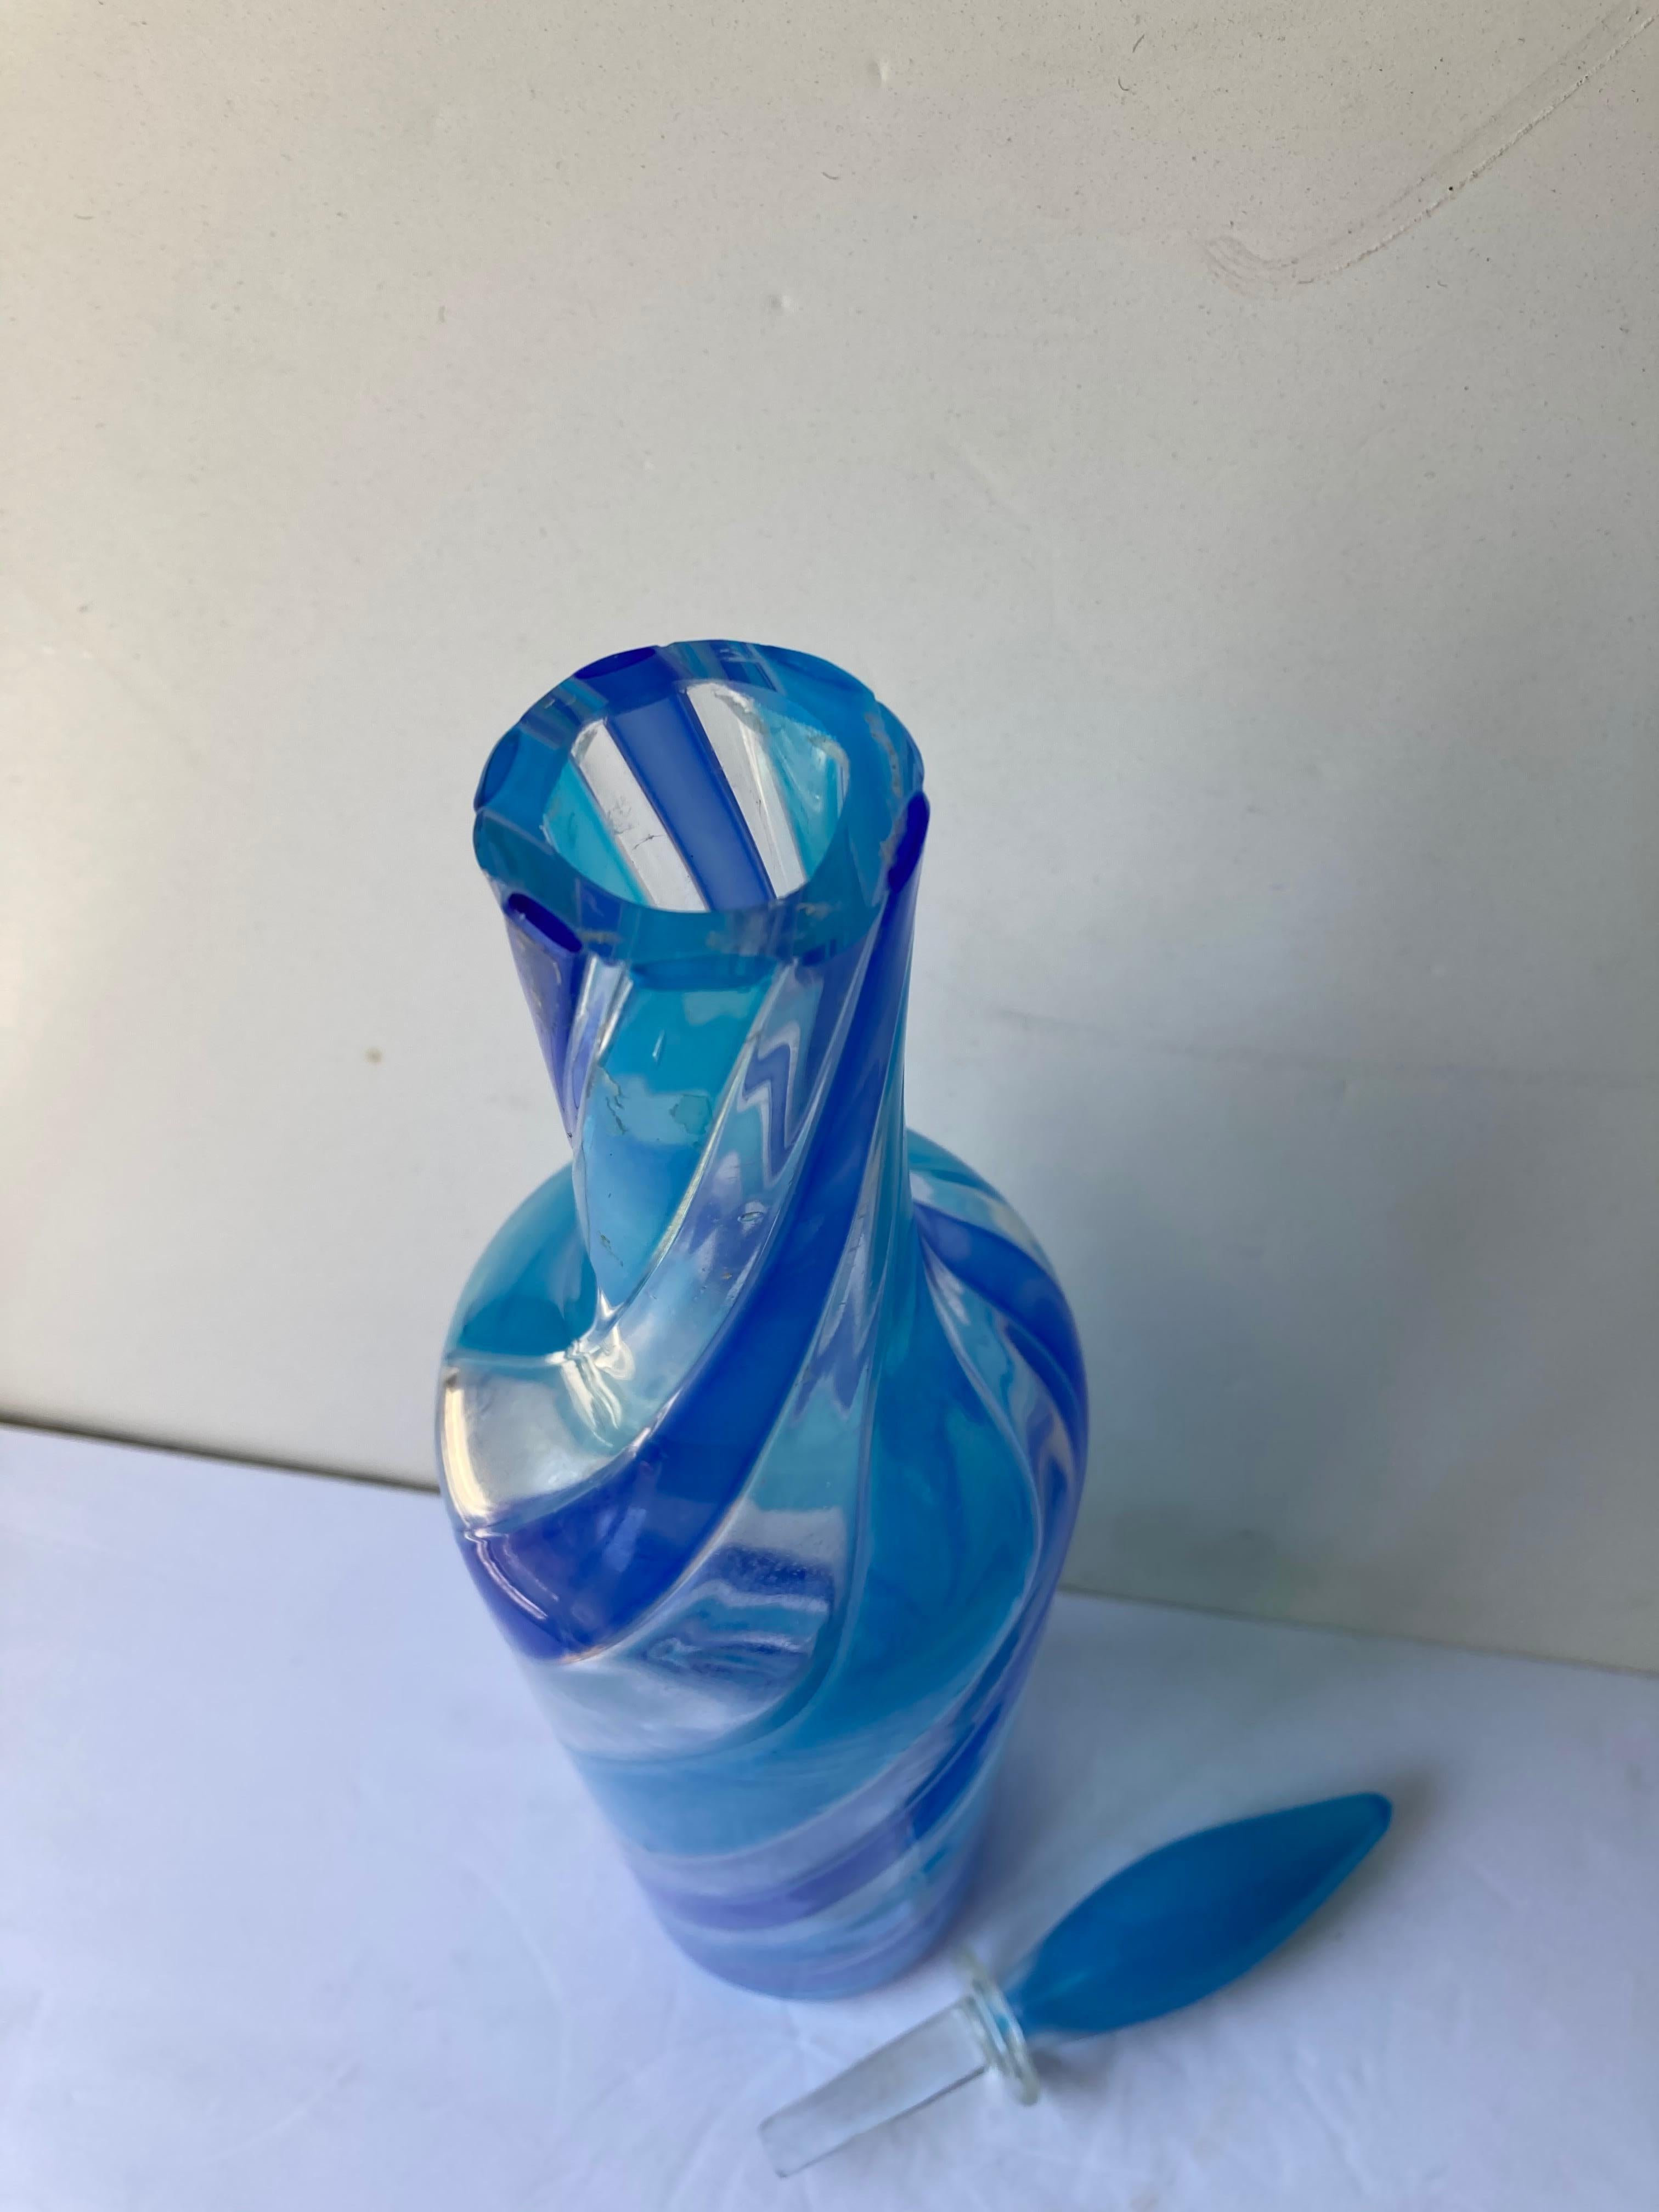 Dies ist eine außergewöhnliche Flasche, sehr hoch von den bekannten Herstellern Fratelli Toso, mundgeblasen in Murano Glas. Hat teilweise blaues Label für Toso Brothers in den 50/60er Jahren.